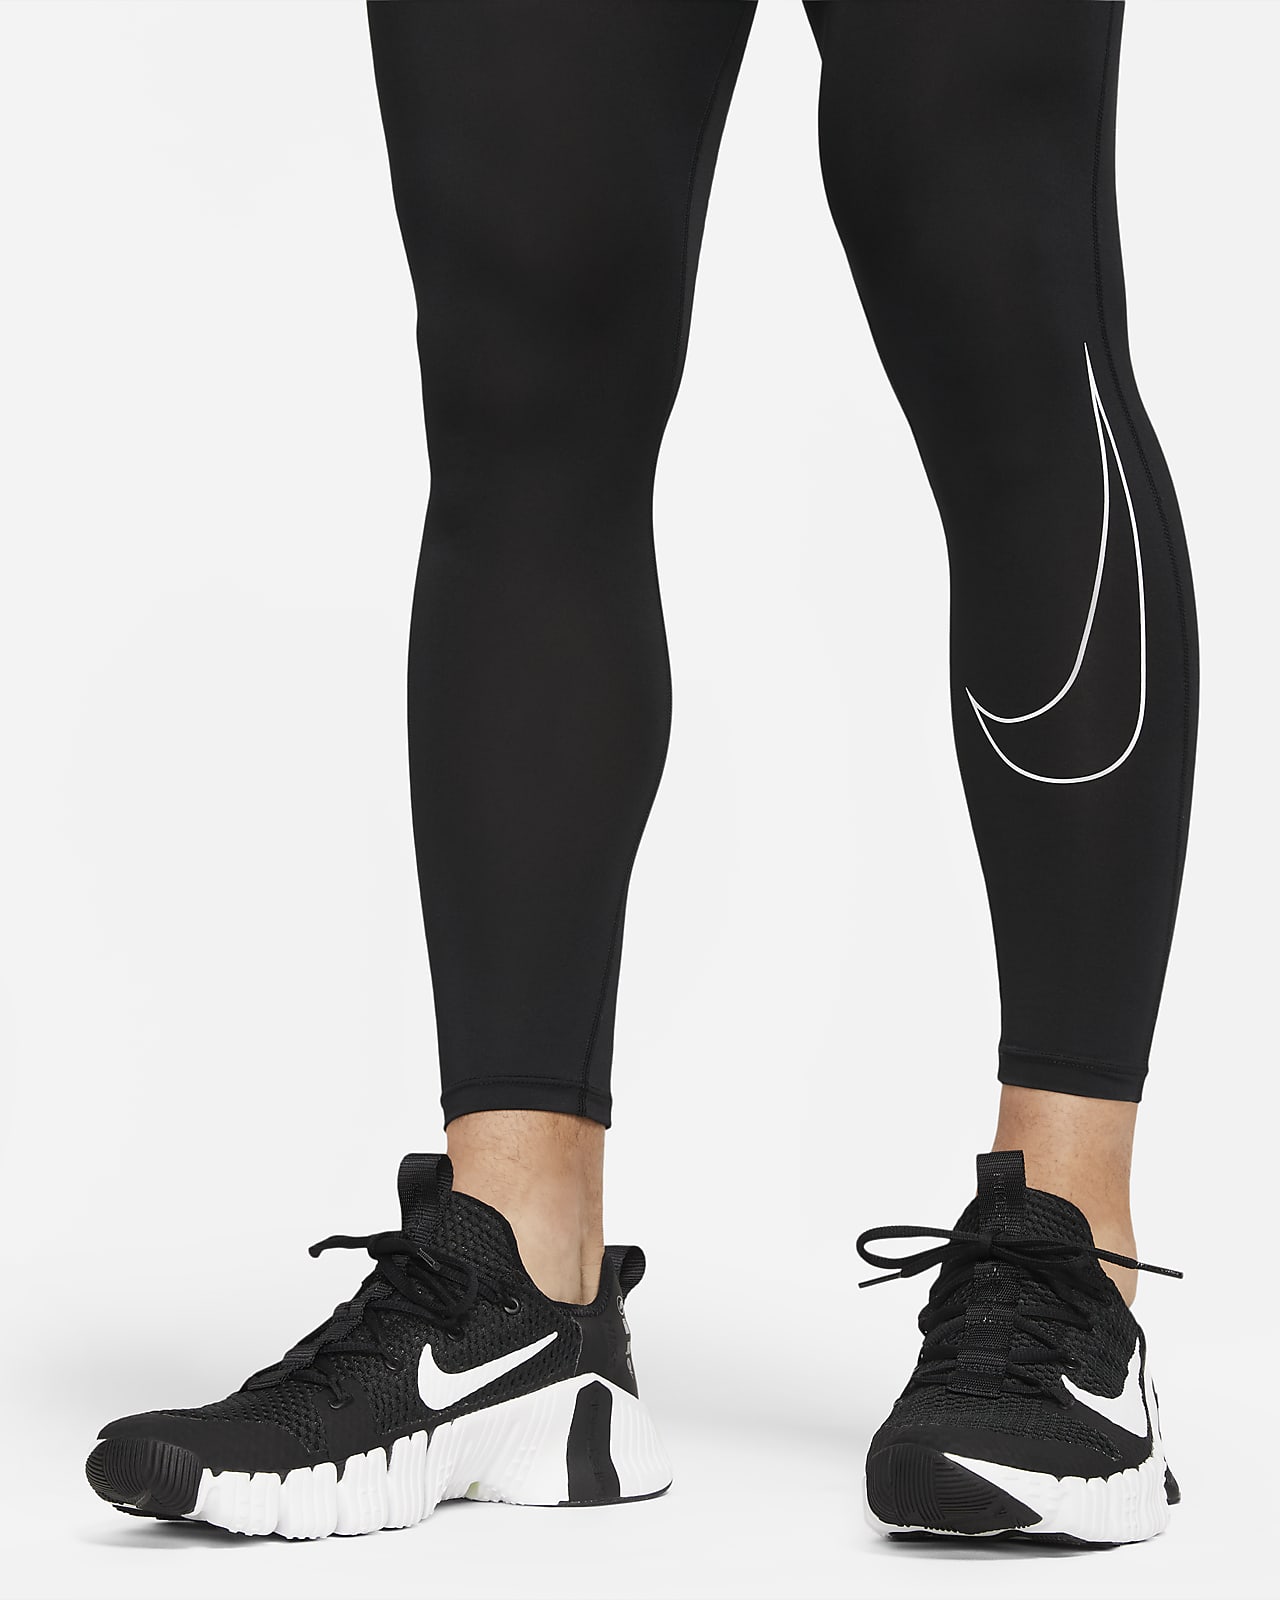 Tights de fitness Dri-FIT Nike Pro para homem. Nike PT